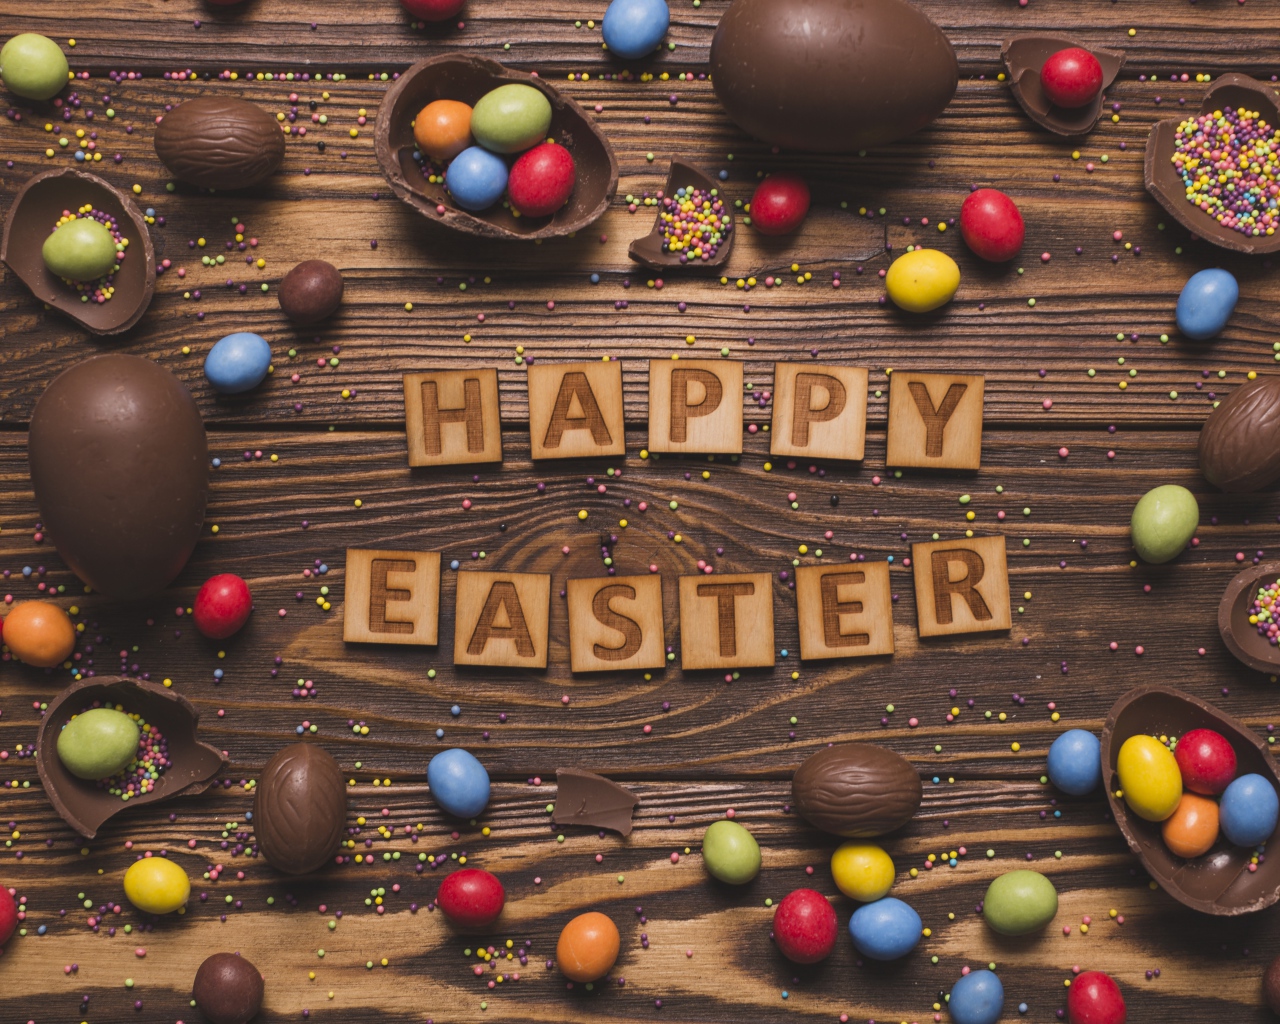 Надпись на английском Счастливой Пасхи на столе с шоколадными яйцами и конфетами